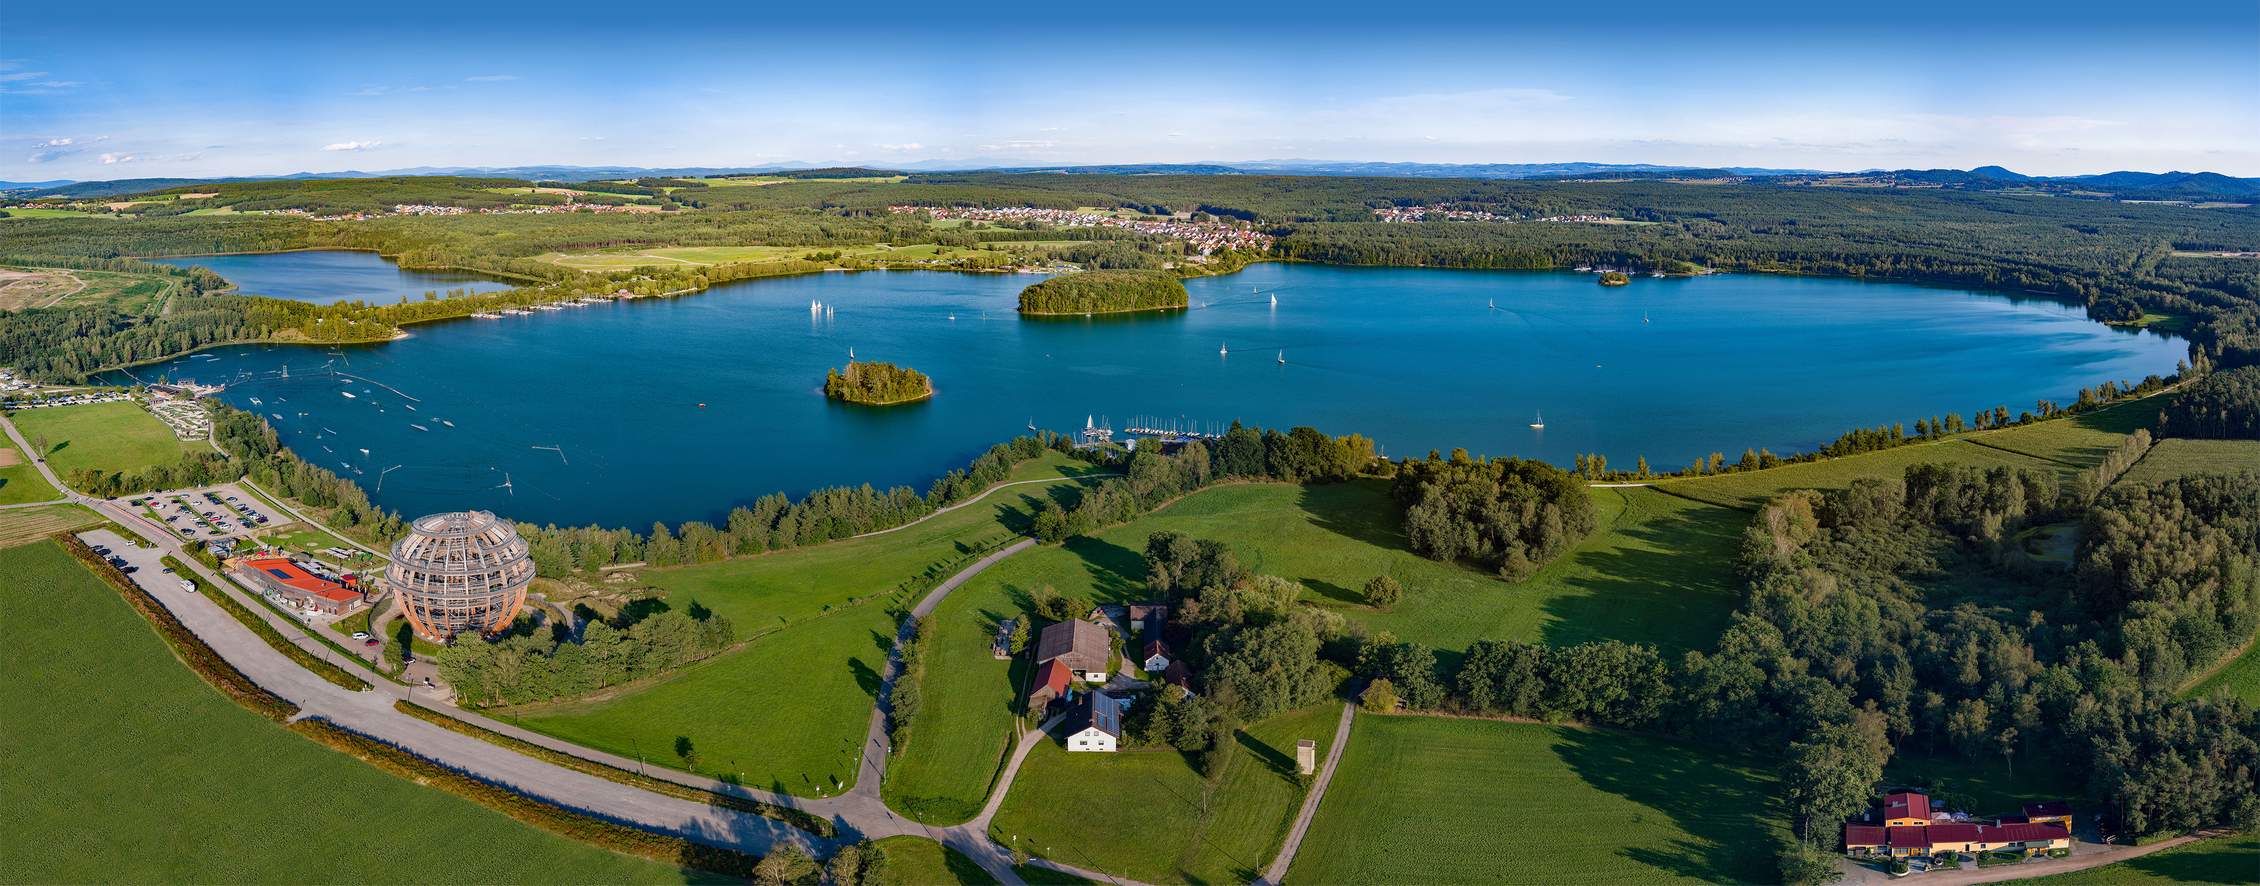 Oberpfälzer Seenland - Natur, Seen und Flüsse in Bayern